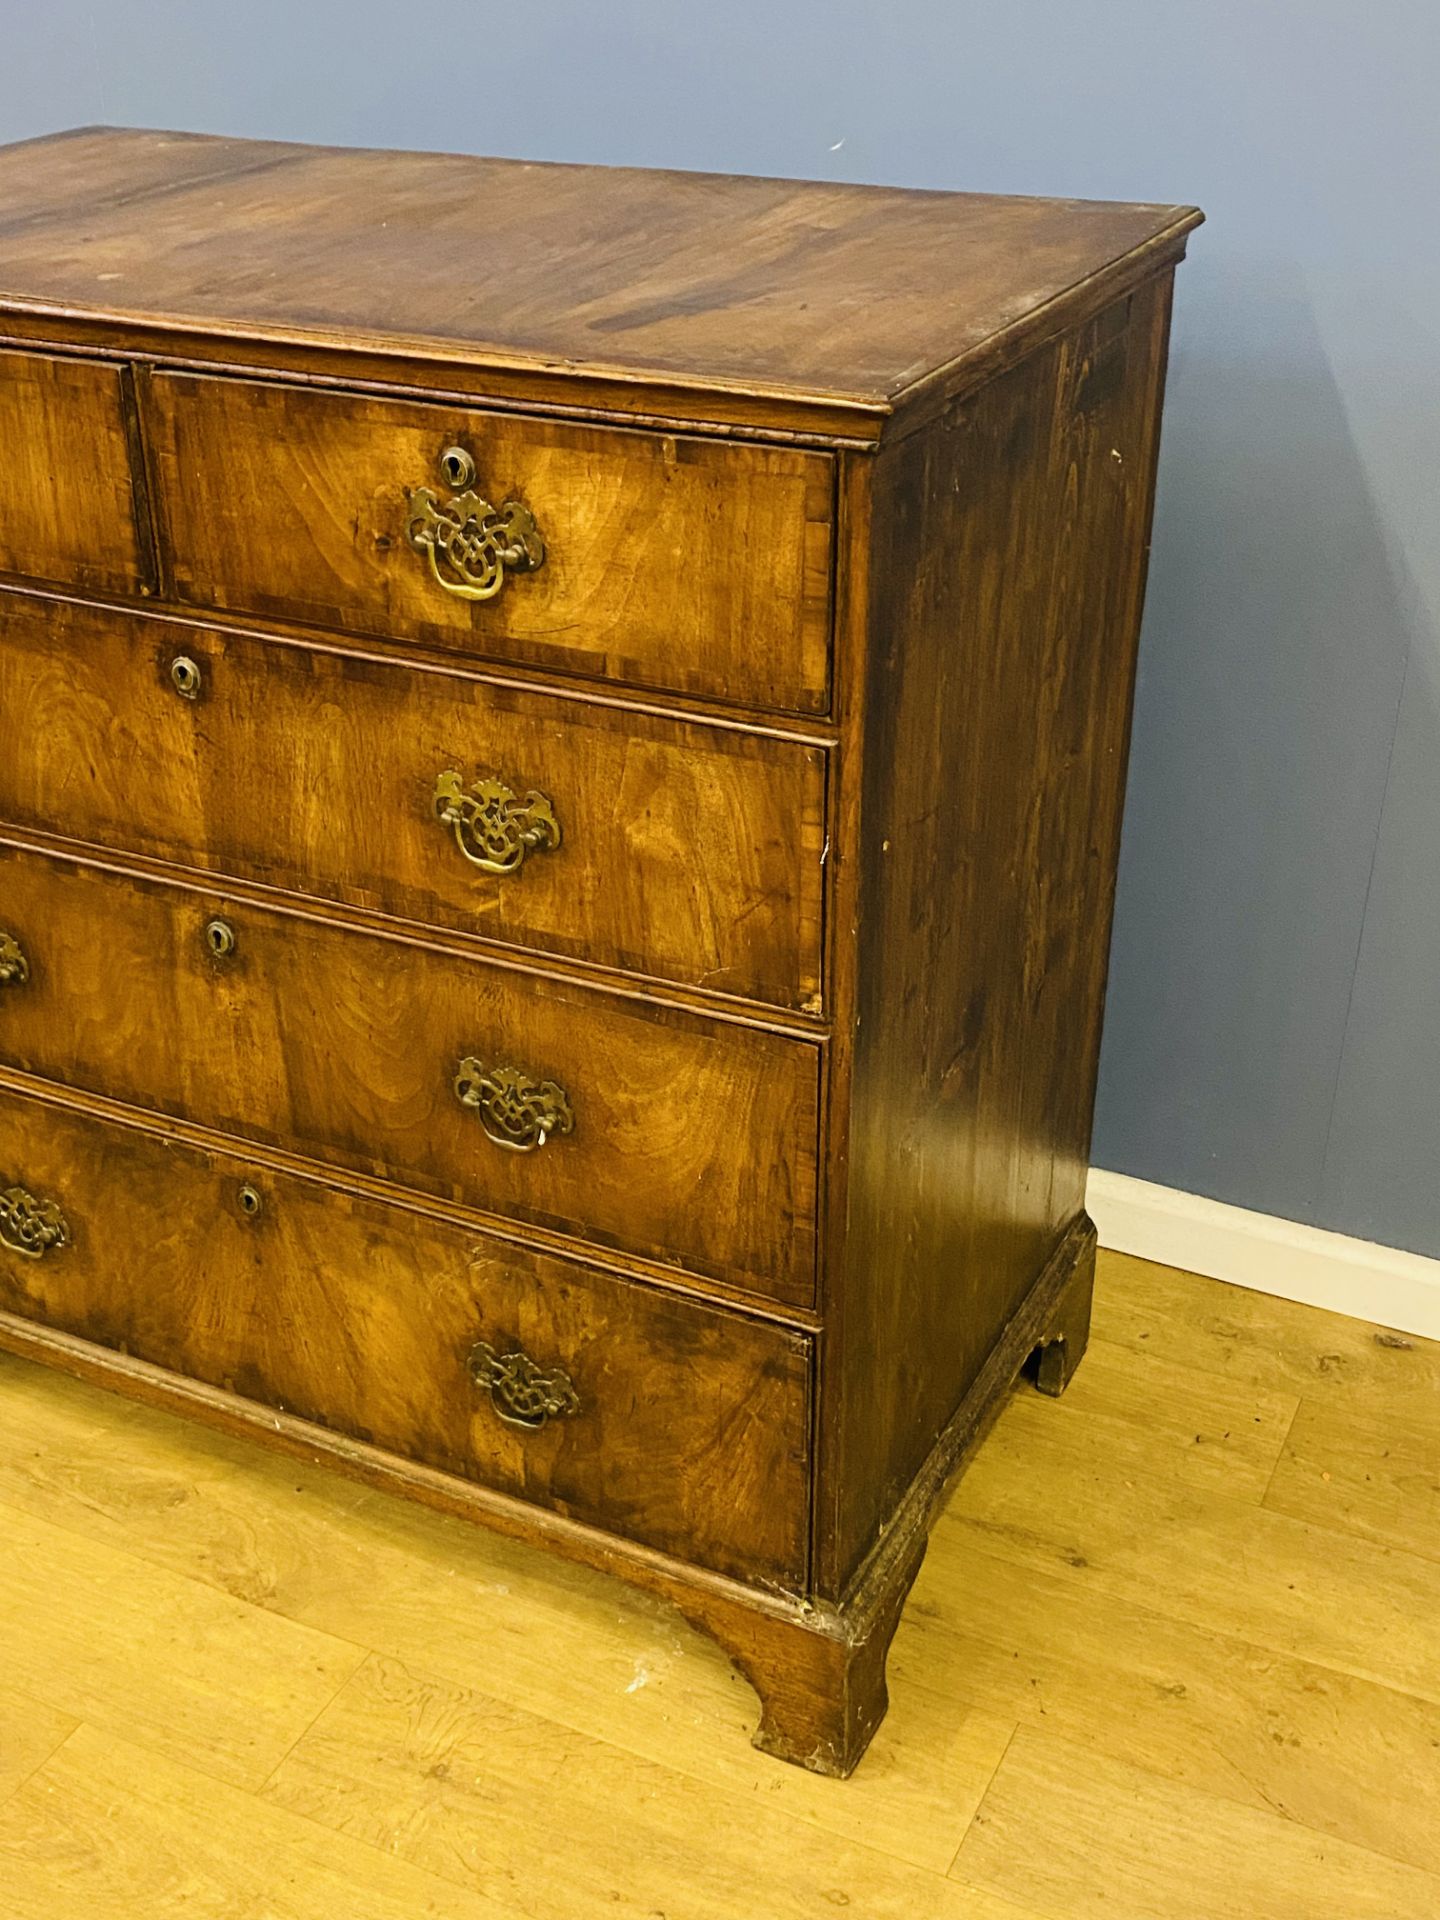 19th century mahogany veneer chest of drawers - Image 3 of 5